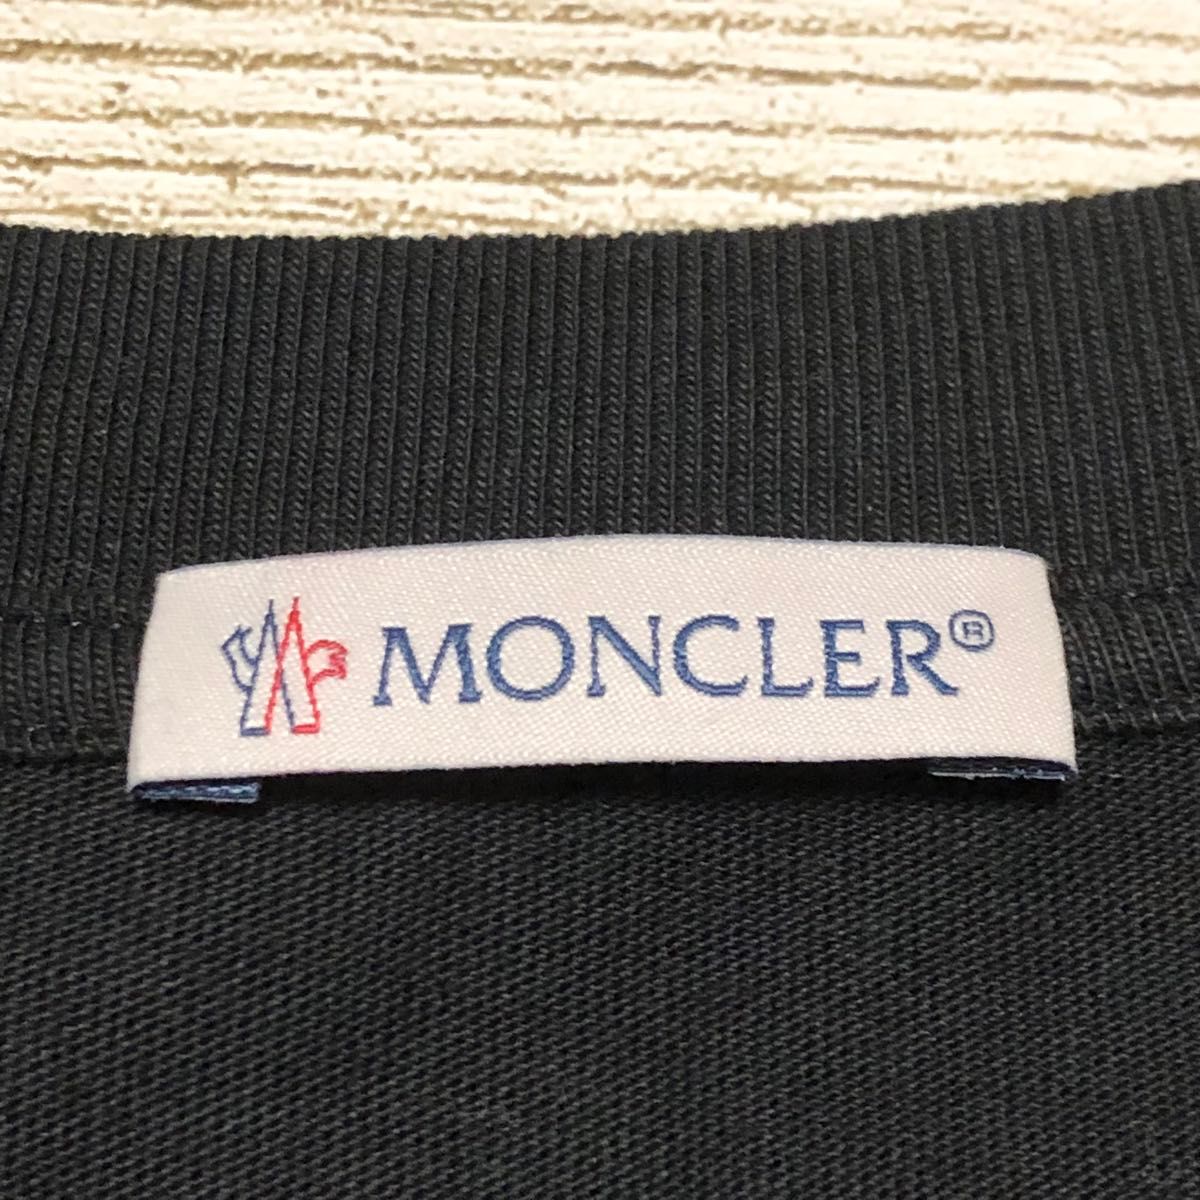 MONCLER モンクレール tシャツ ビック刺繍ロゴ入り 美品